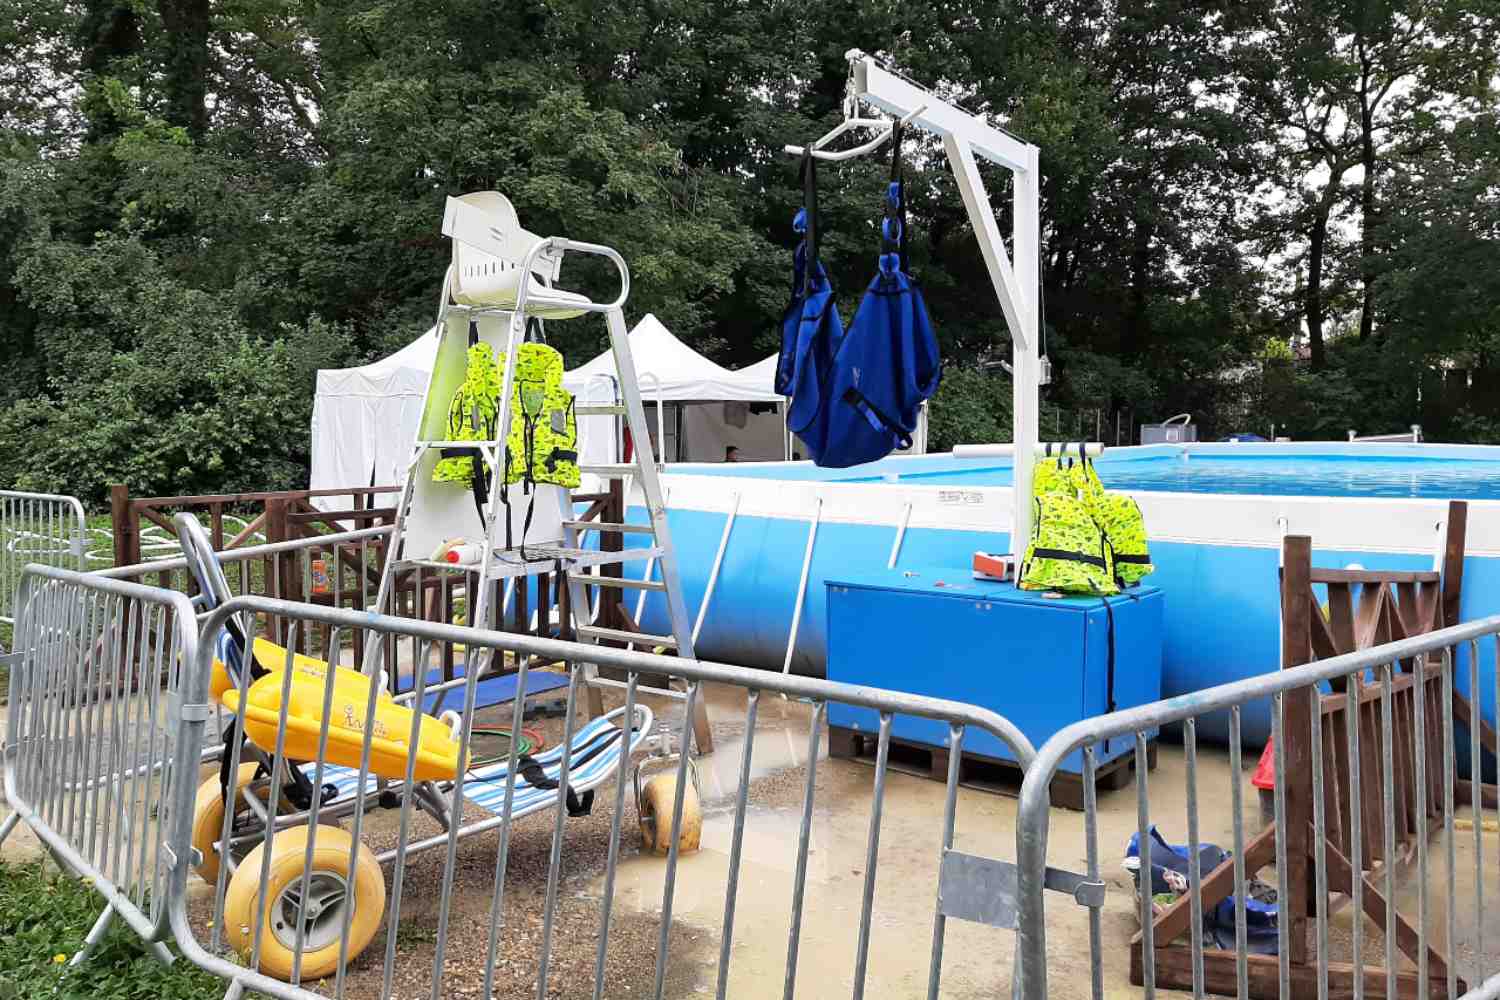 Fauteuil flottant et lève personne permettant l'accès à la piscine pour les personnes handicapées - Activ'été 2021 - Parc Elsa Triolet